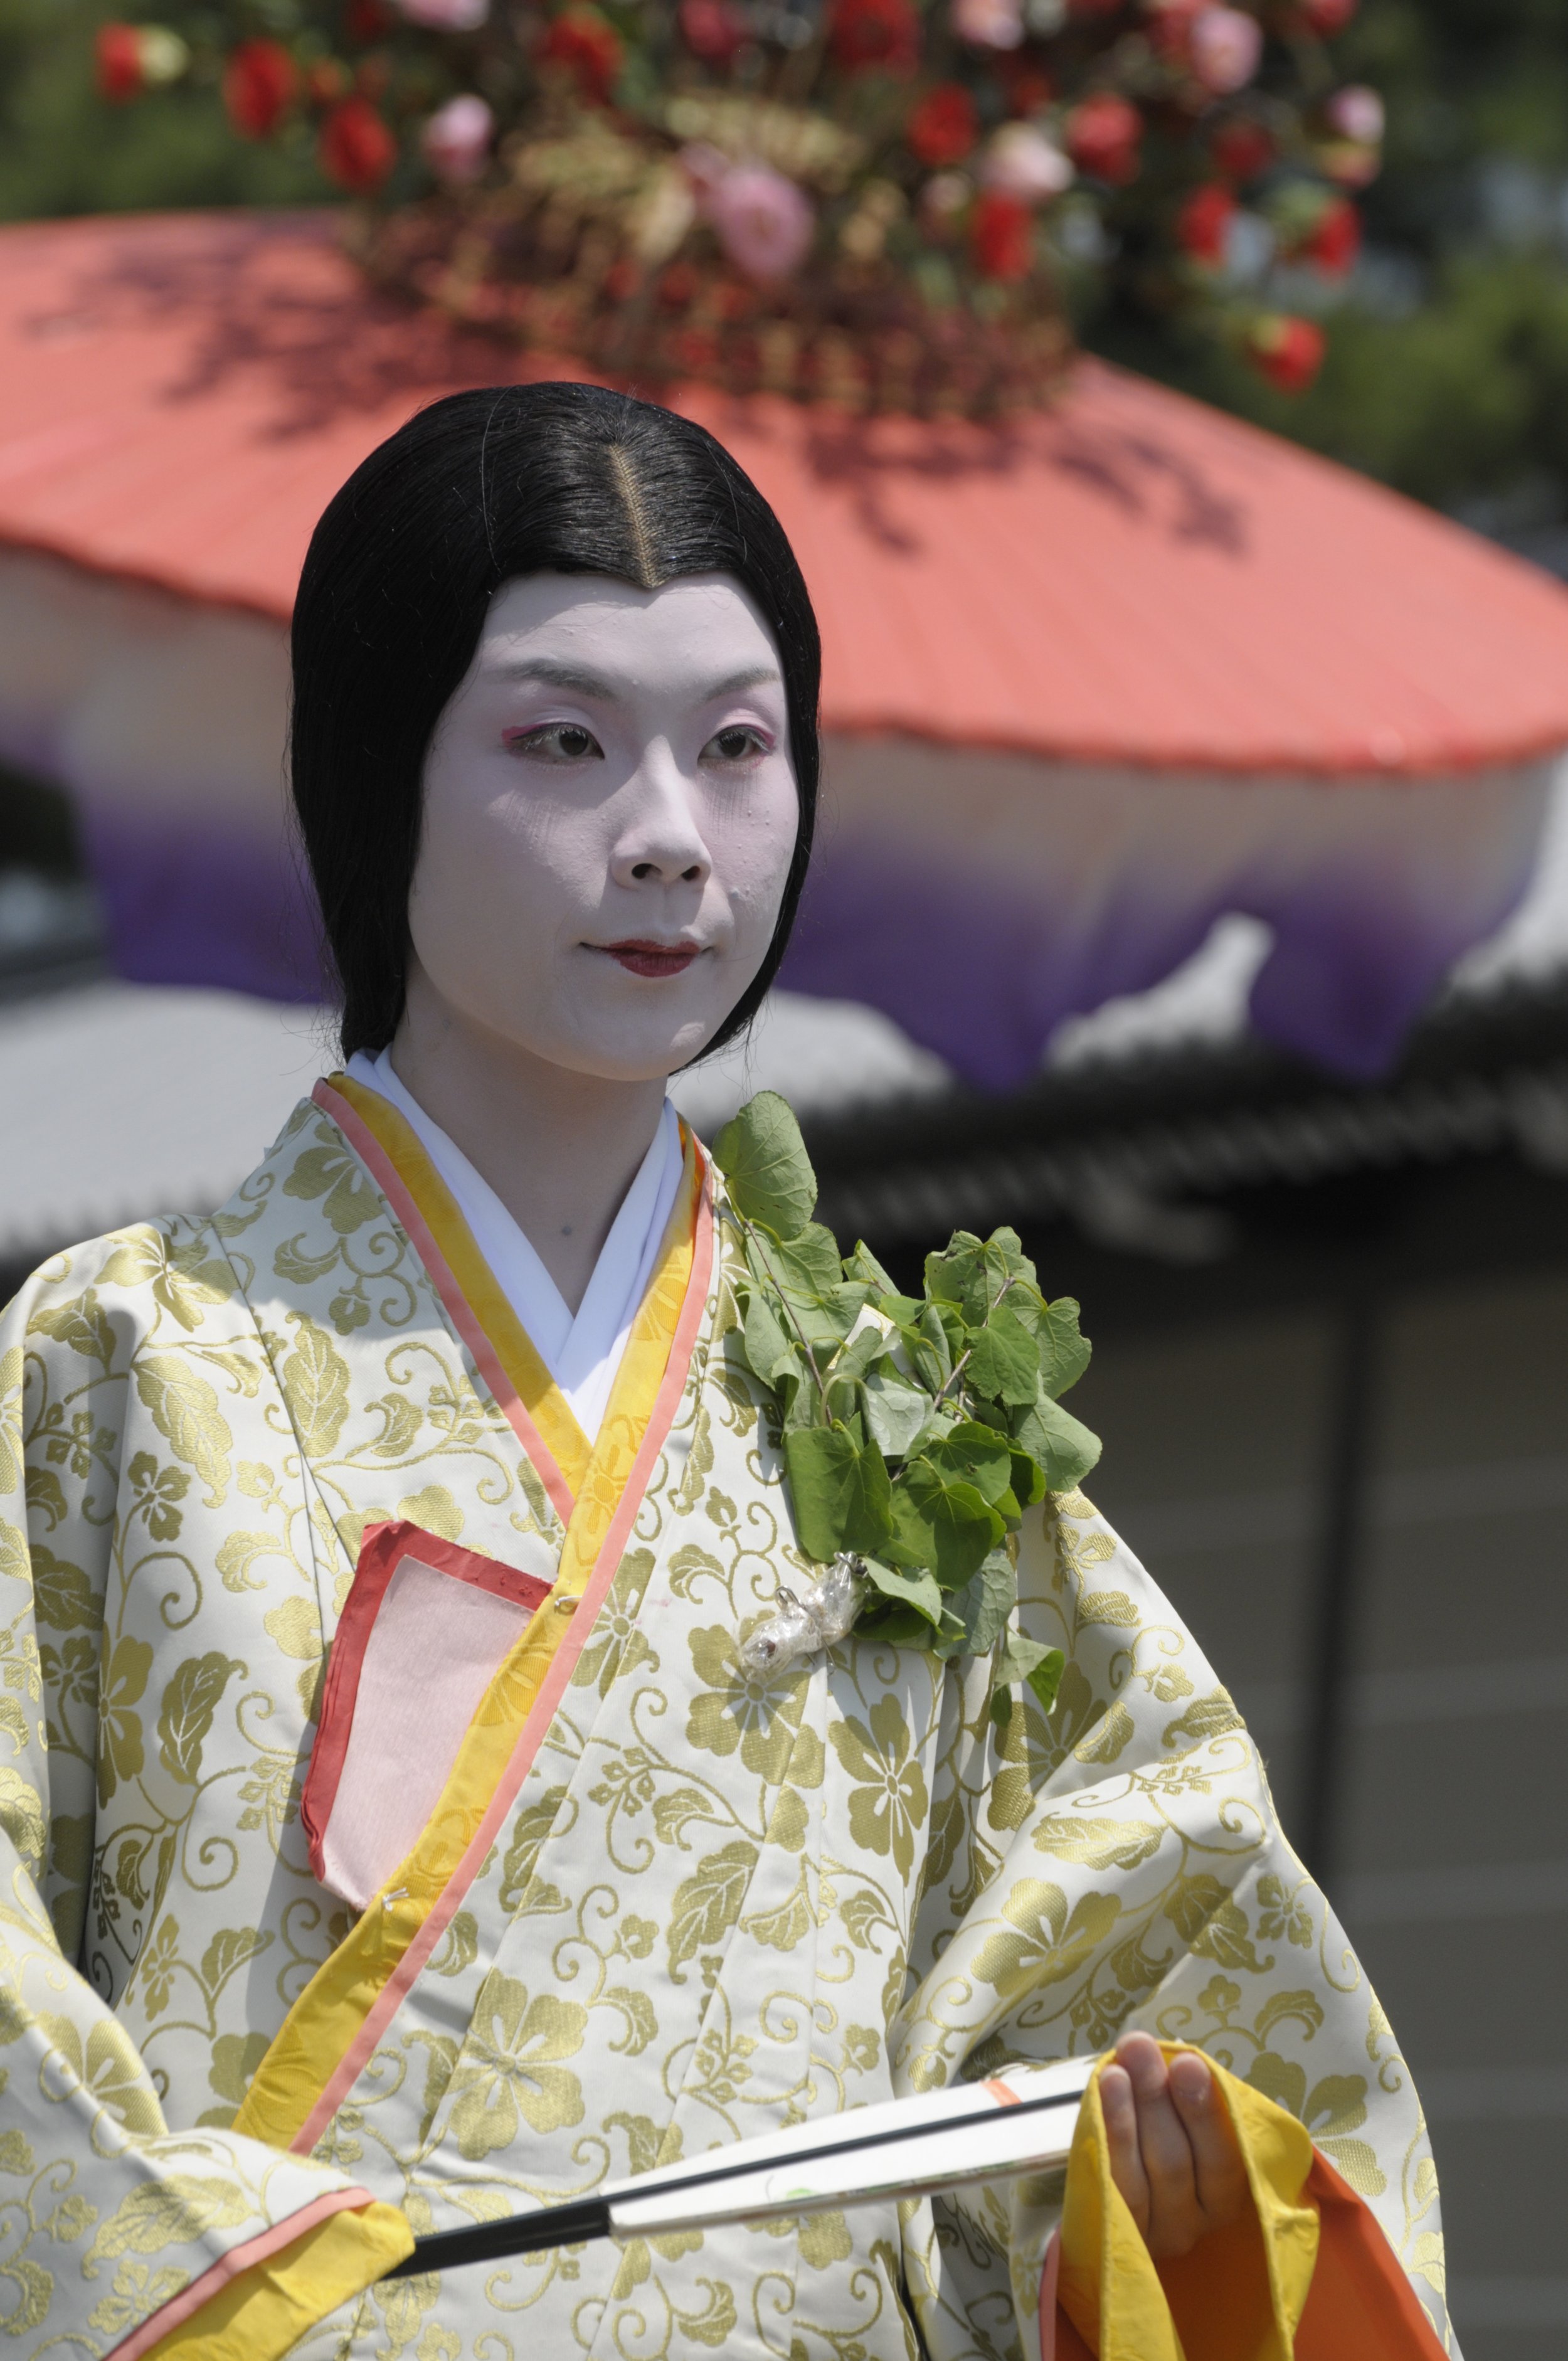 aoi-matsuri-festival-kyoto-visitor-s-guide-since-1987